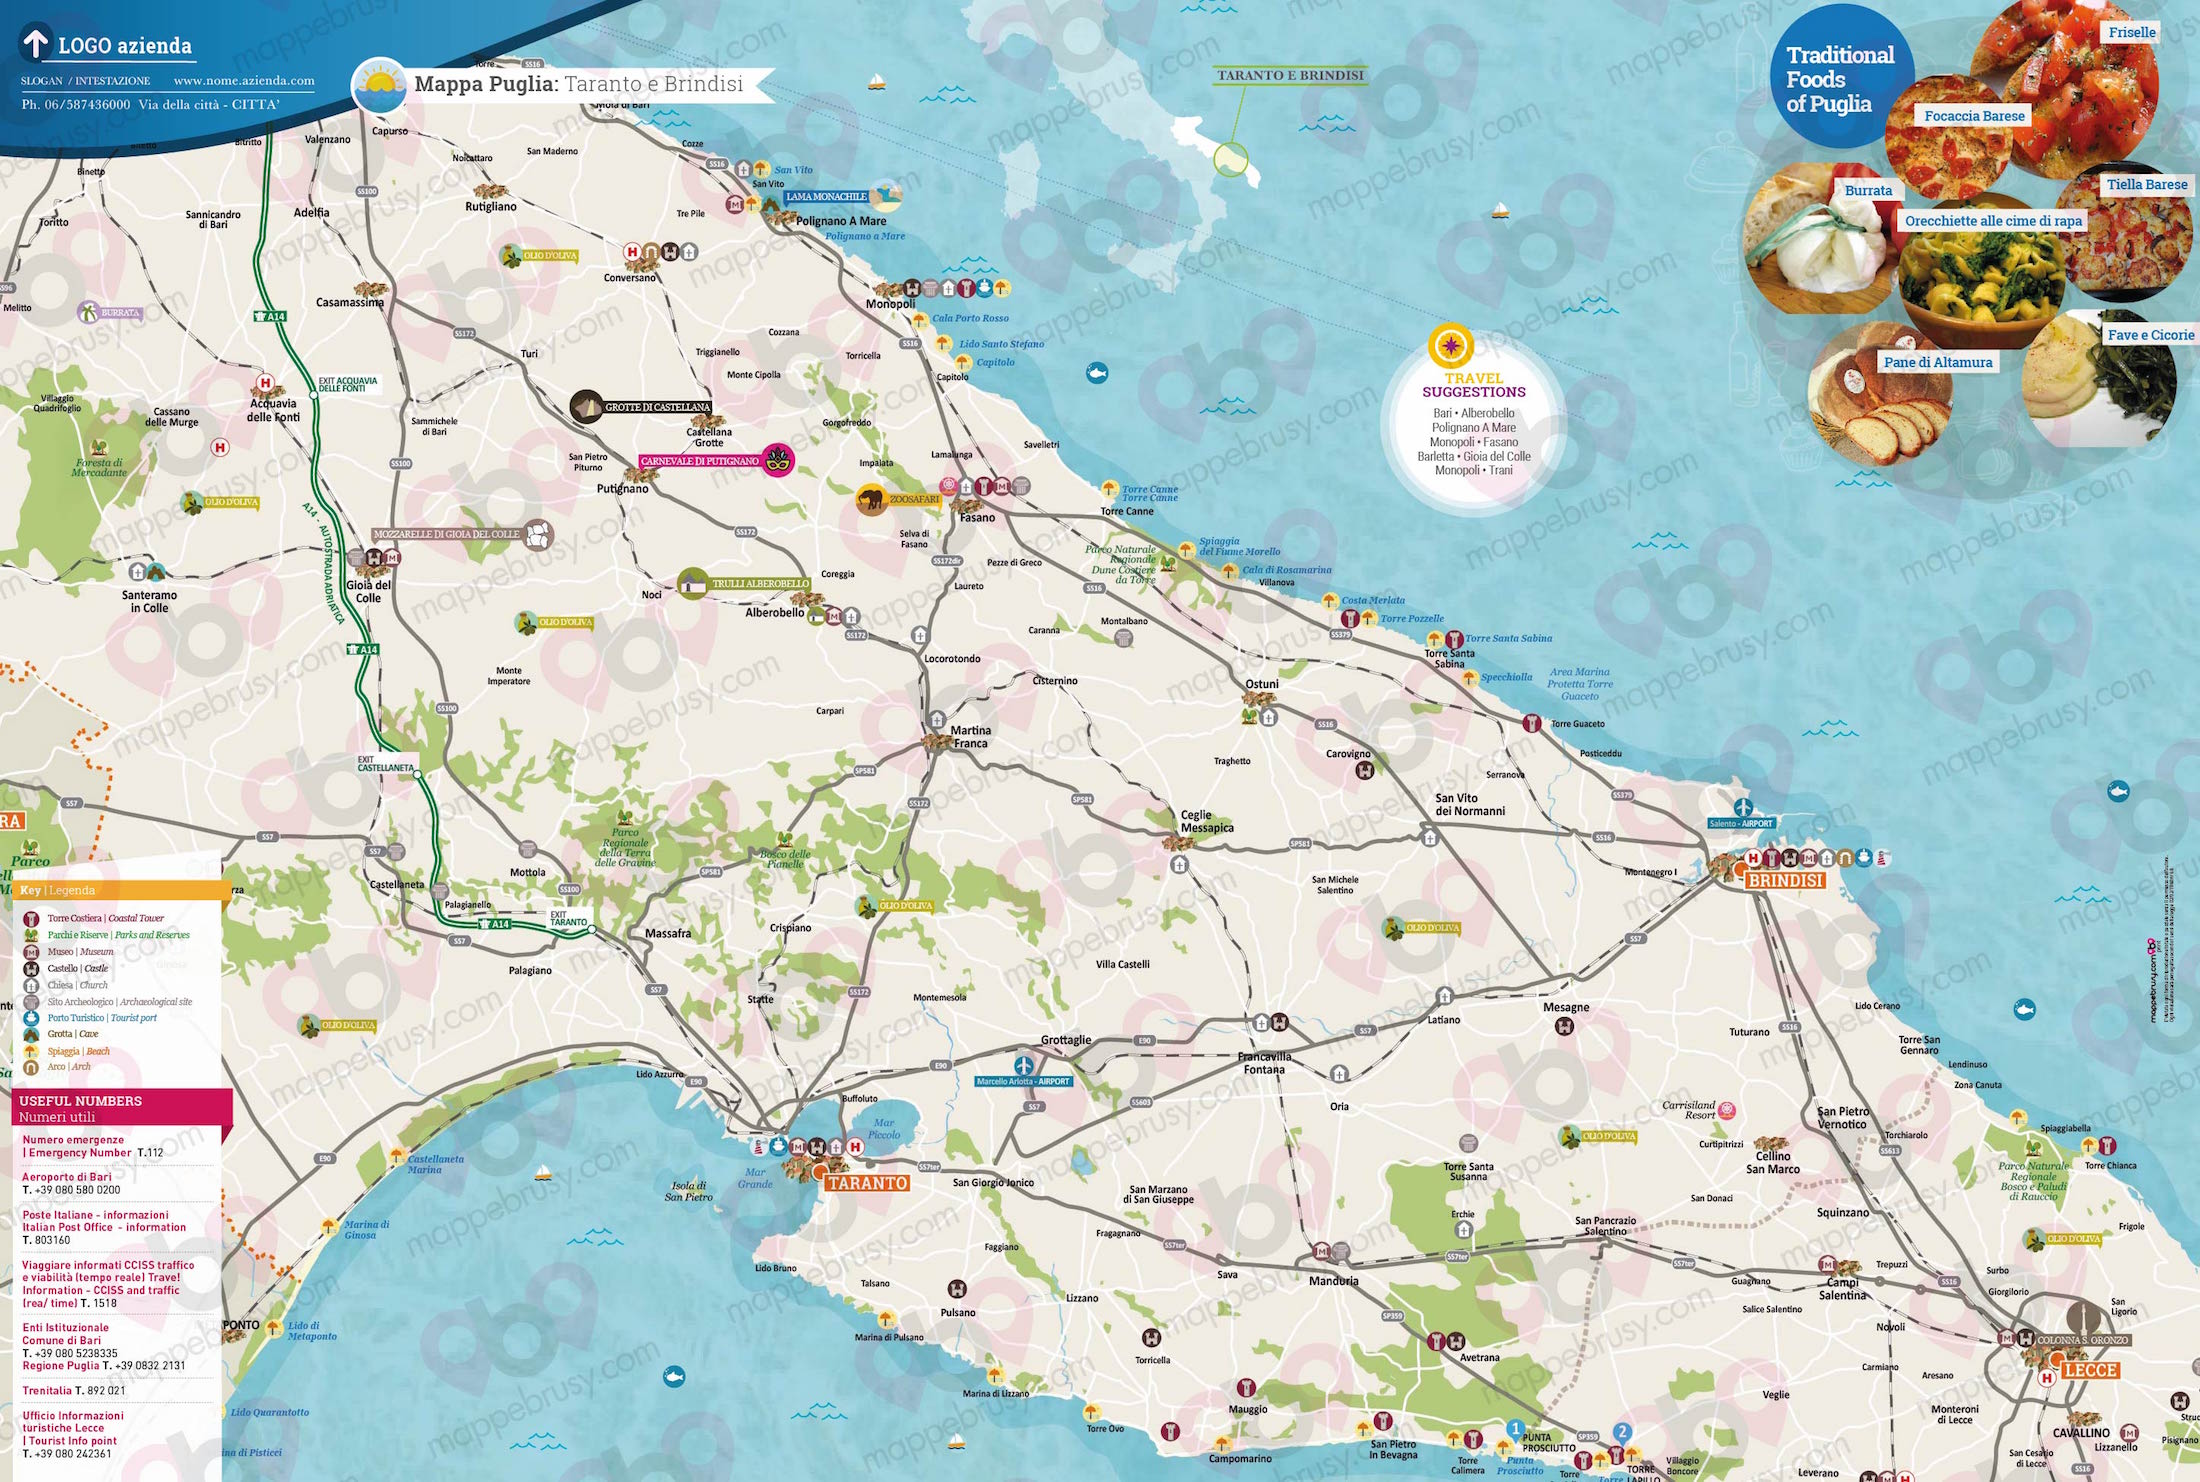 Mappa della Puglia - Puglia city map - mappa Puglia - mappa personalizzata della Puglia